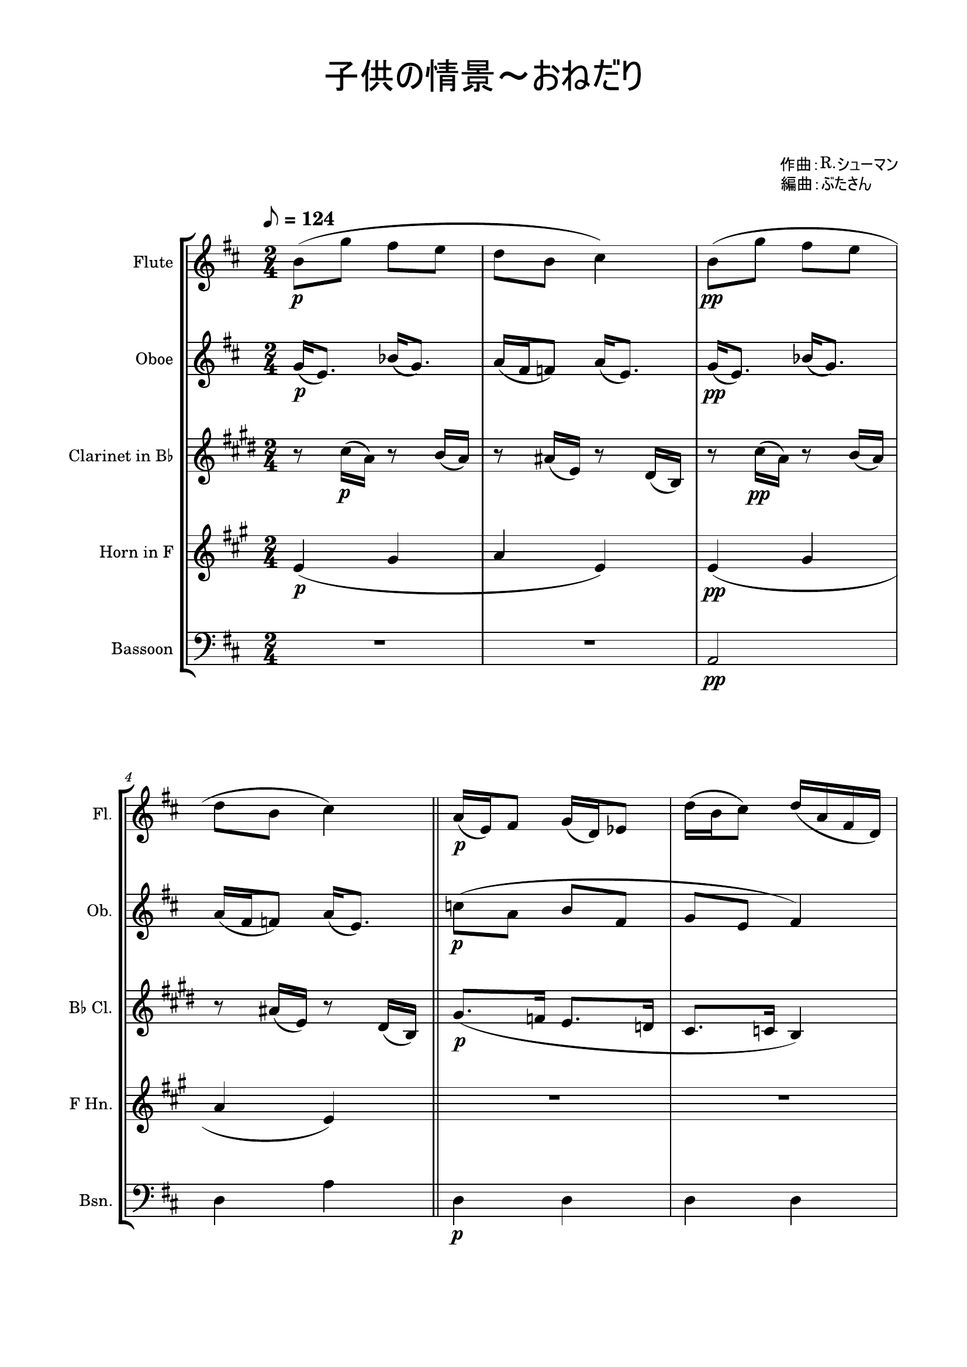 ロベルト・シューマン - おねだり～「子供の情景」より (木管五重奏) by ぶたさん